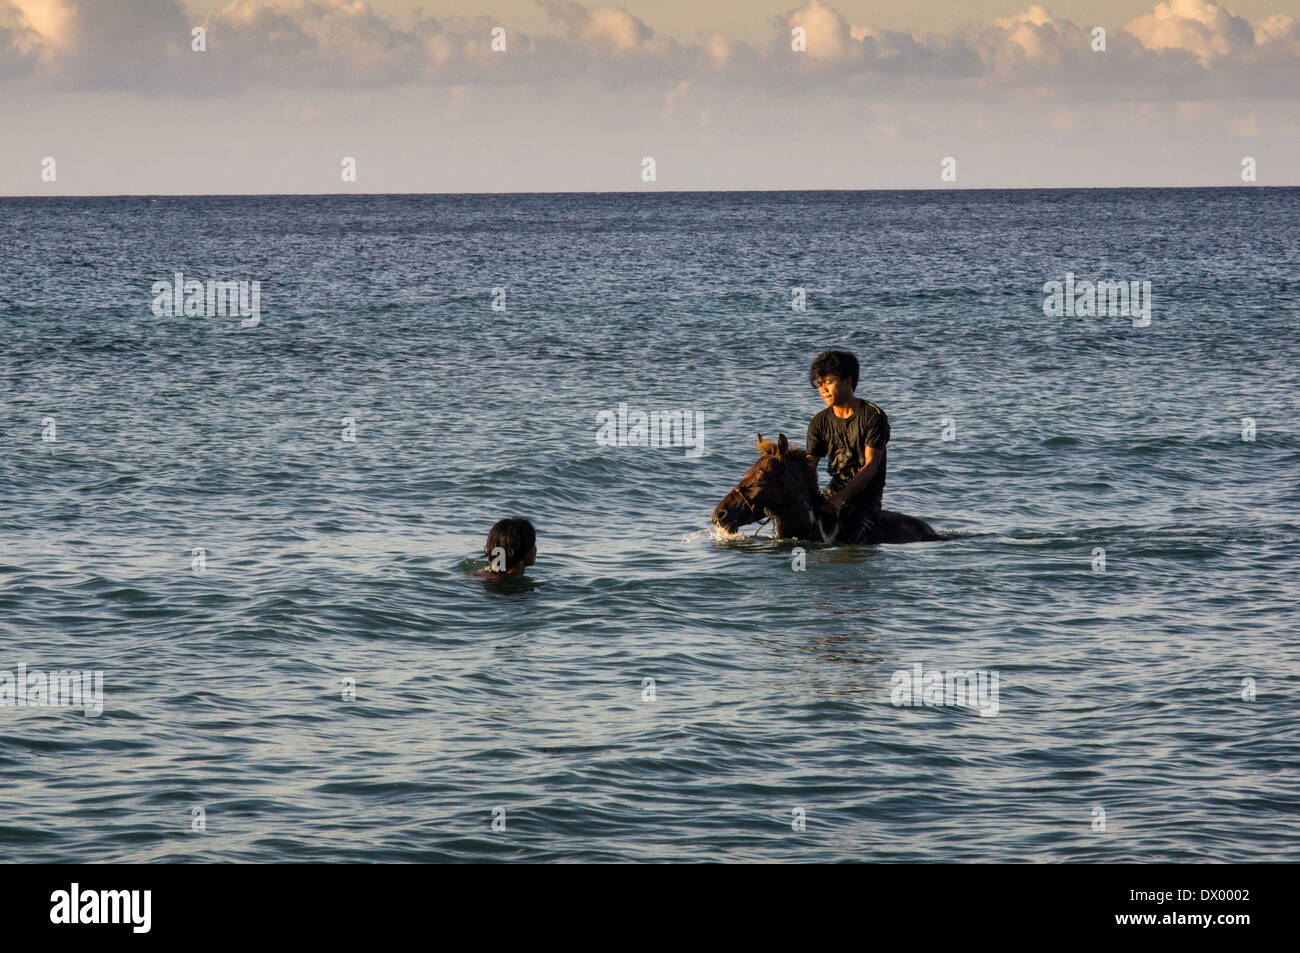 local man with horse swimming in the sea, Gili Trawangan, gili islands, Indonesia, Asia Stock Photo